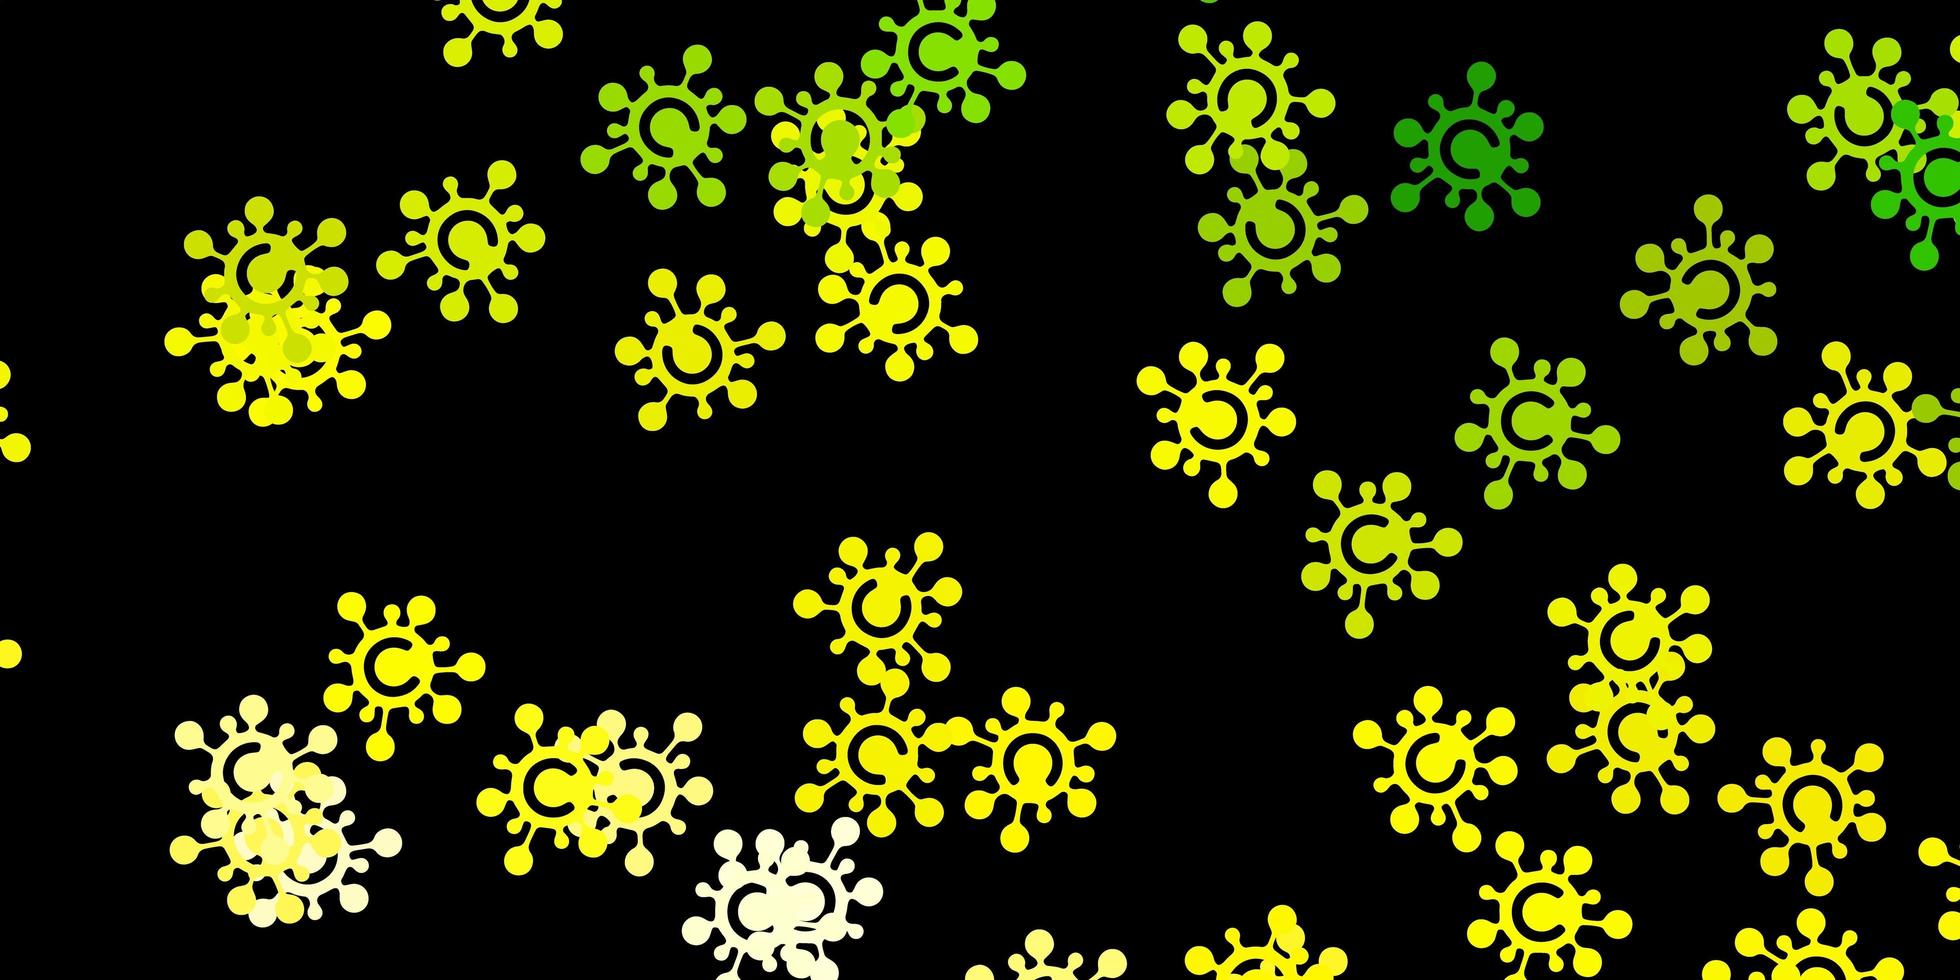 toile de fond verte et jaune avec des symboles de virus. vecteur